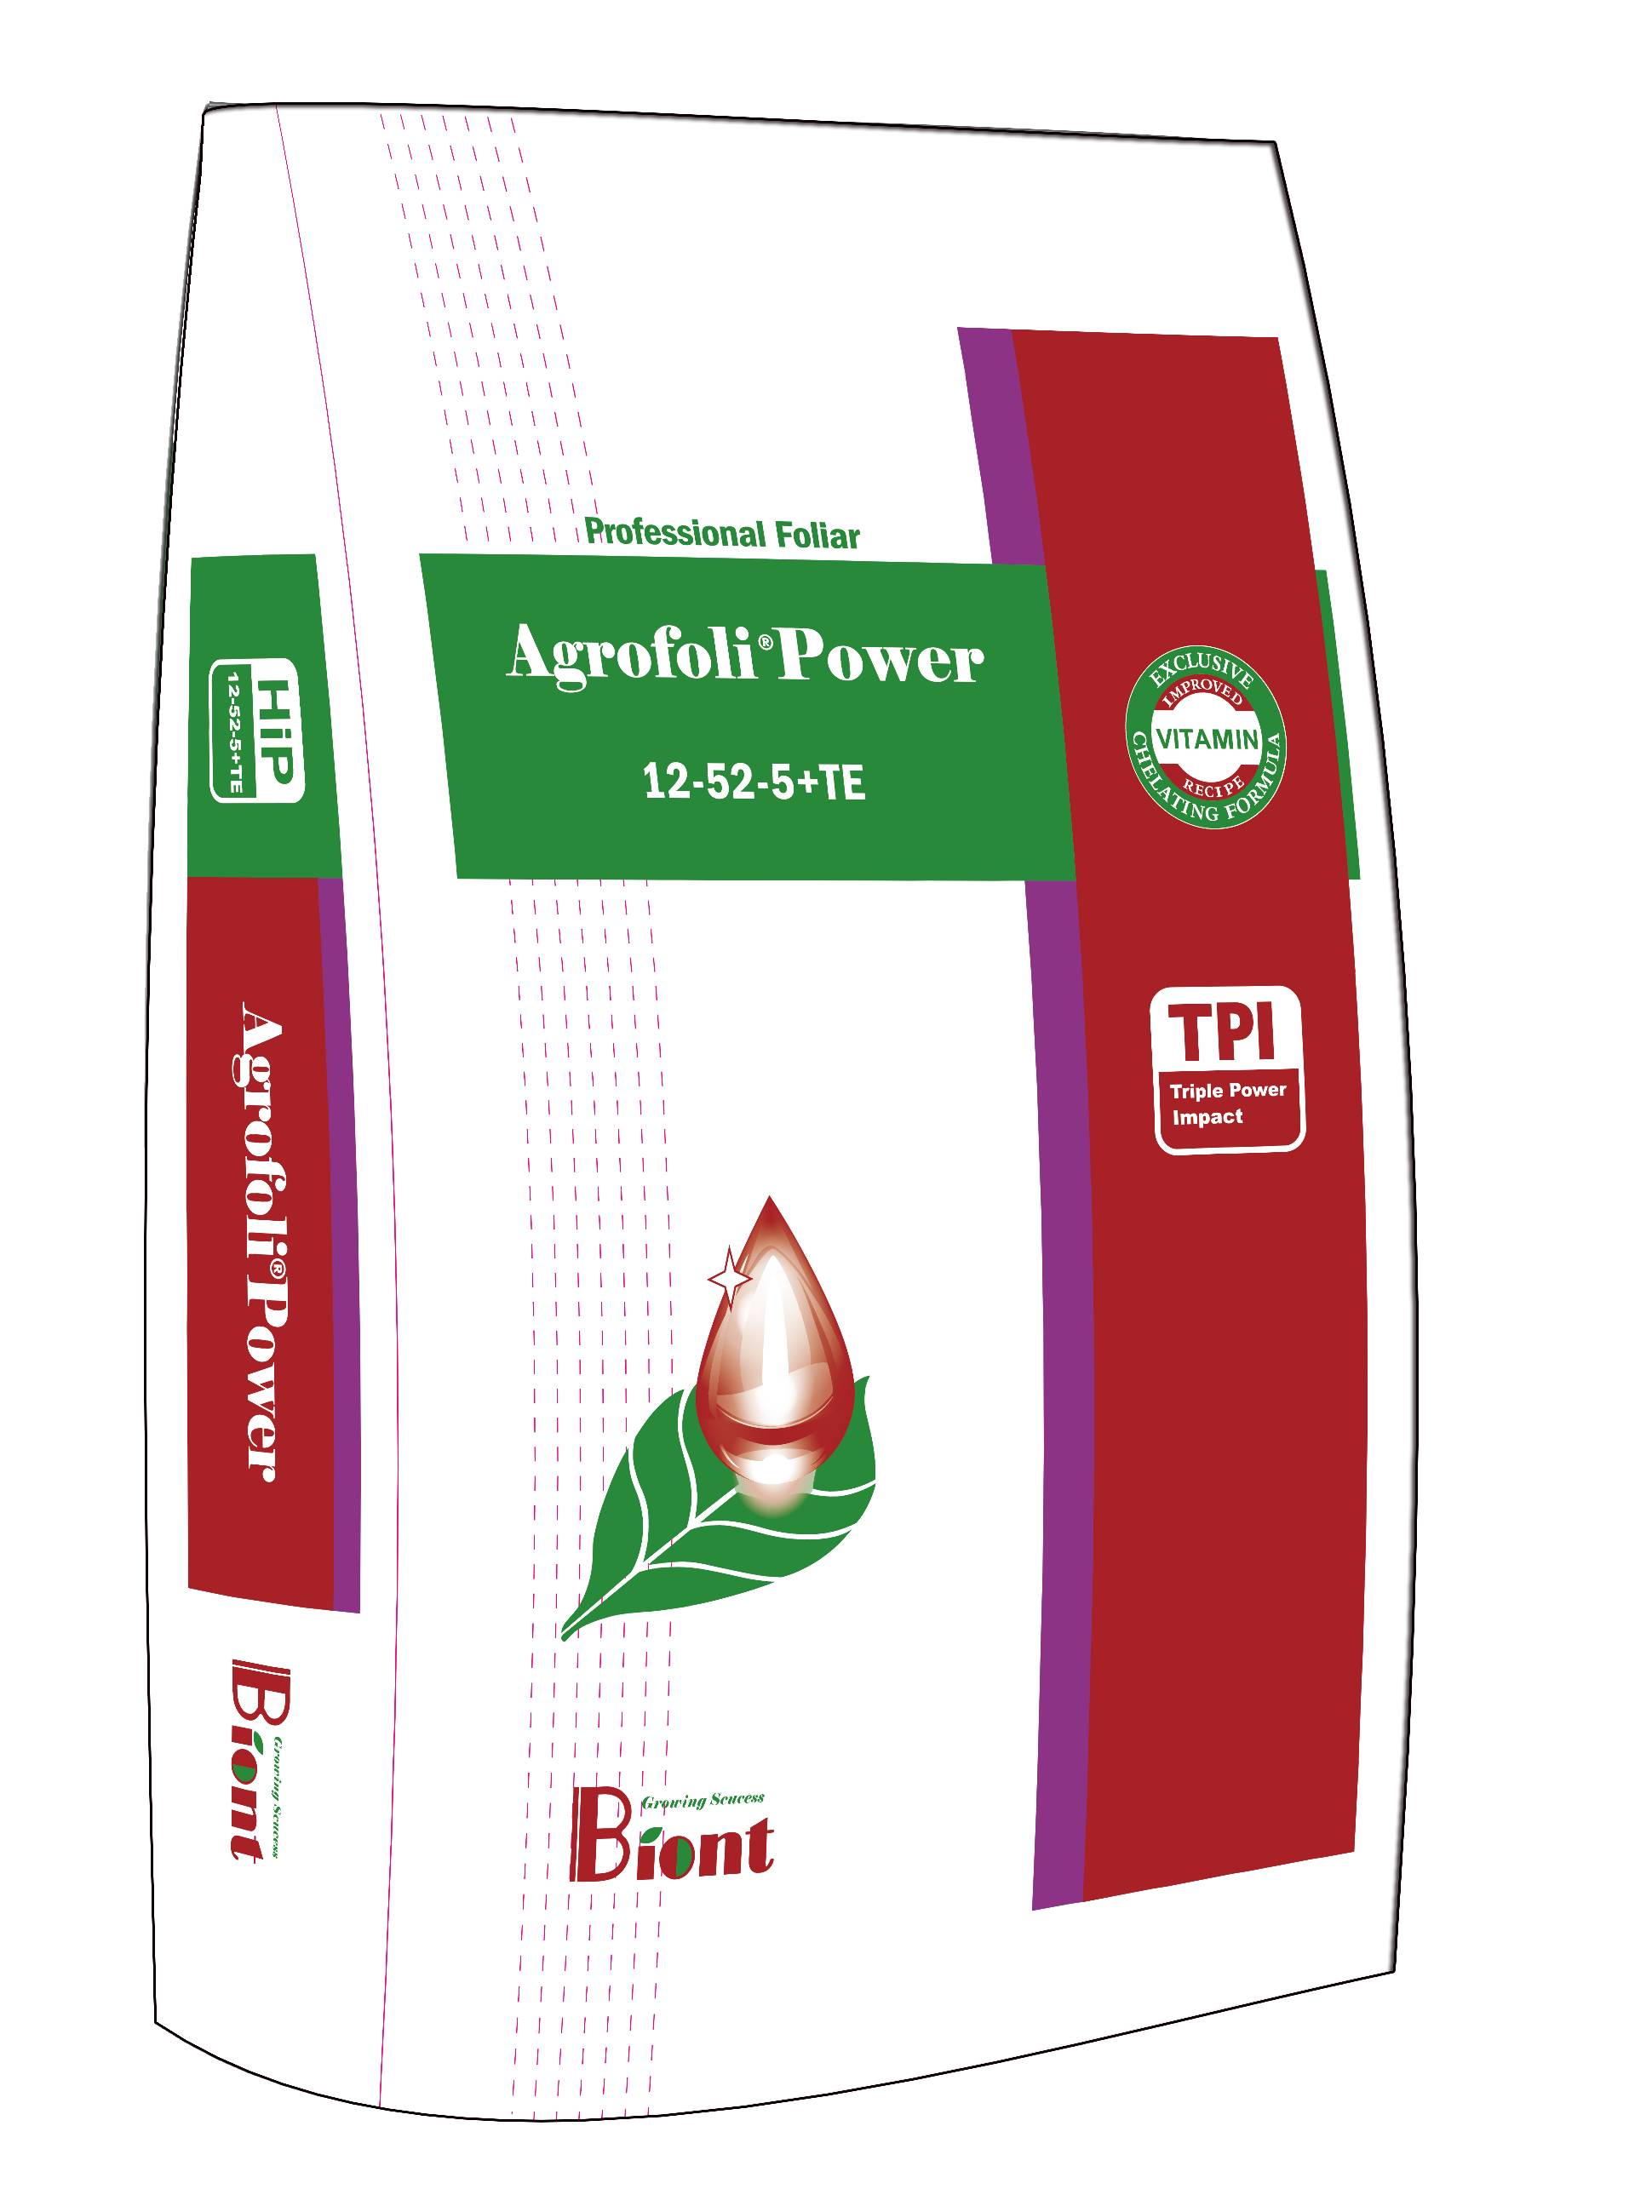 Agrofoli Power 12-52-5+TE